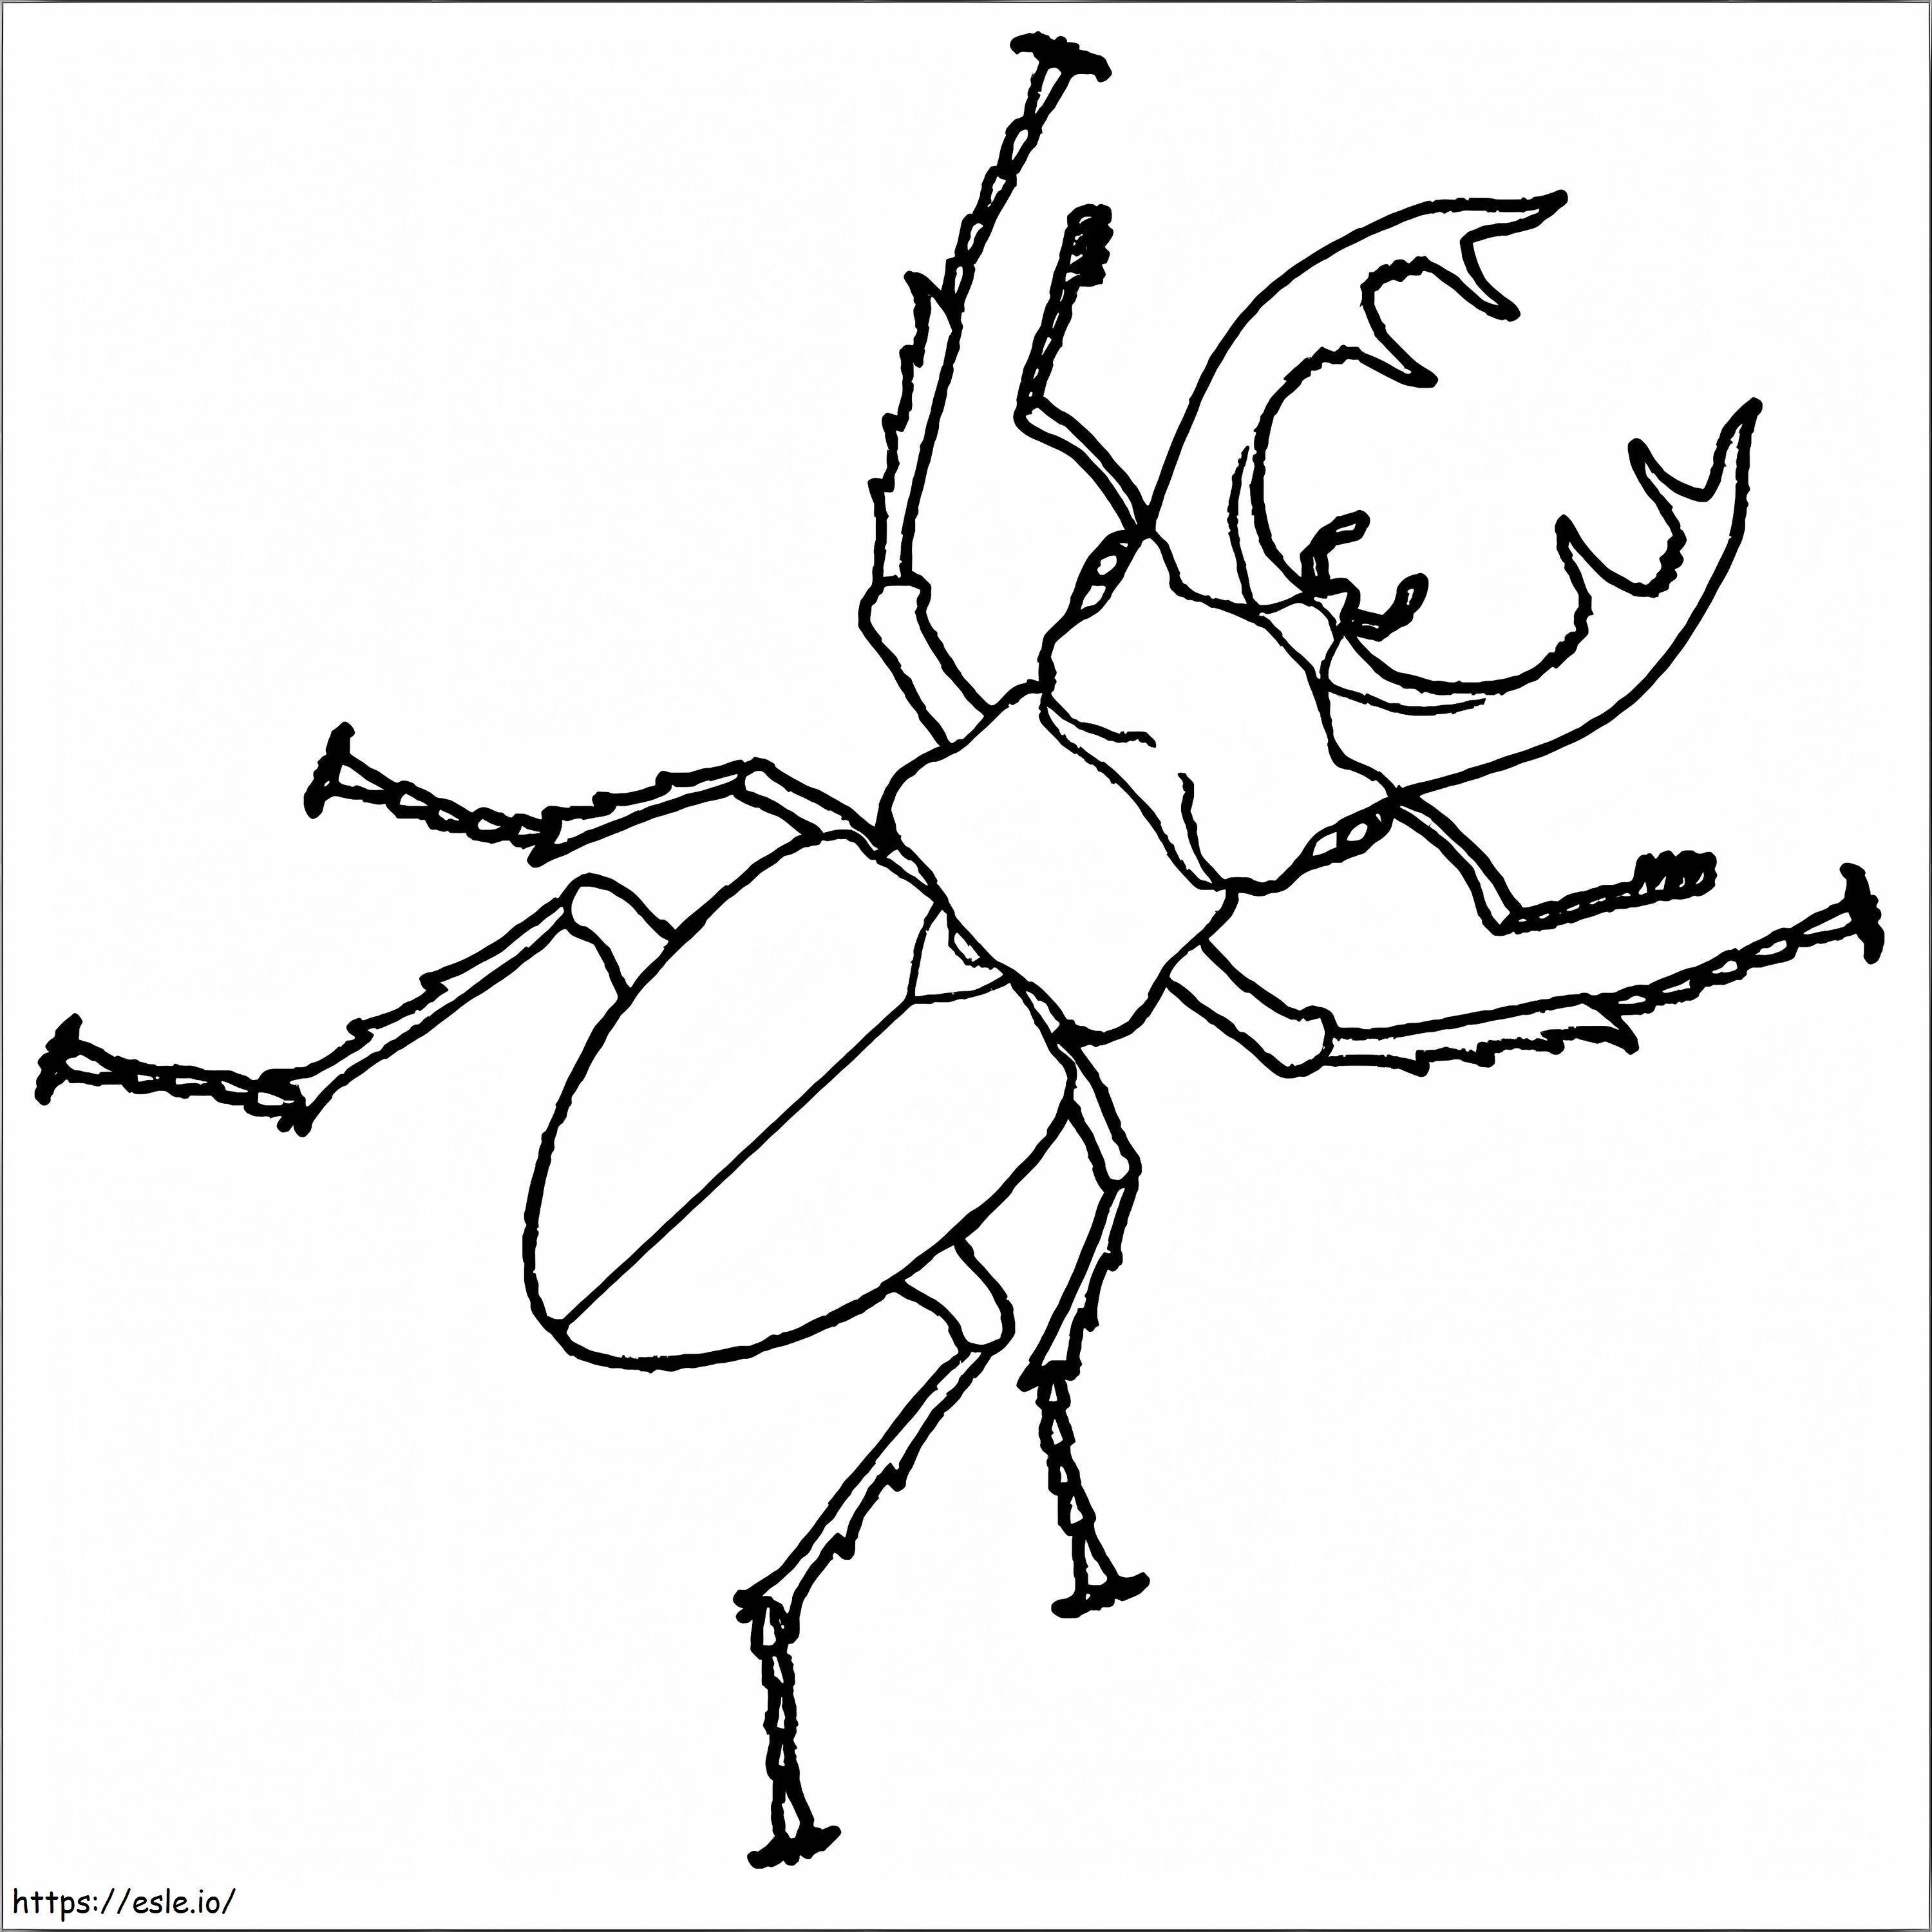 Stag Beetle stampabile da colorare